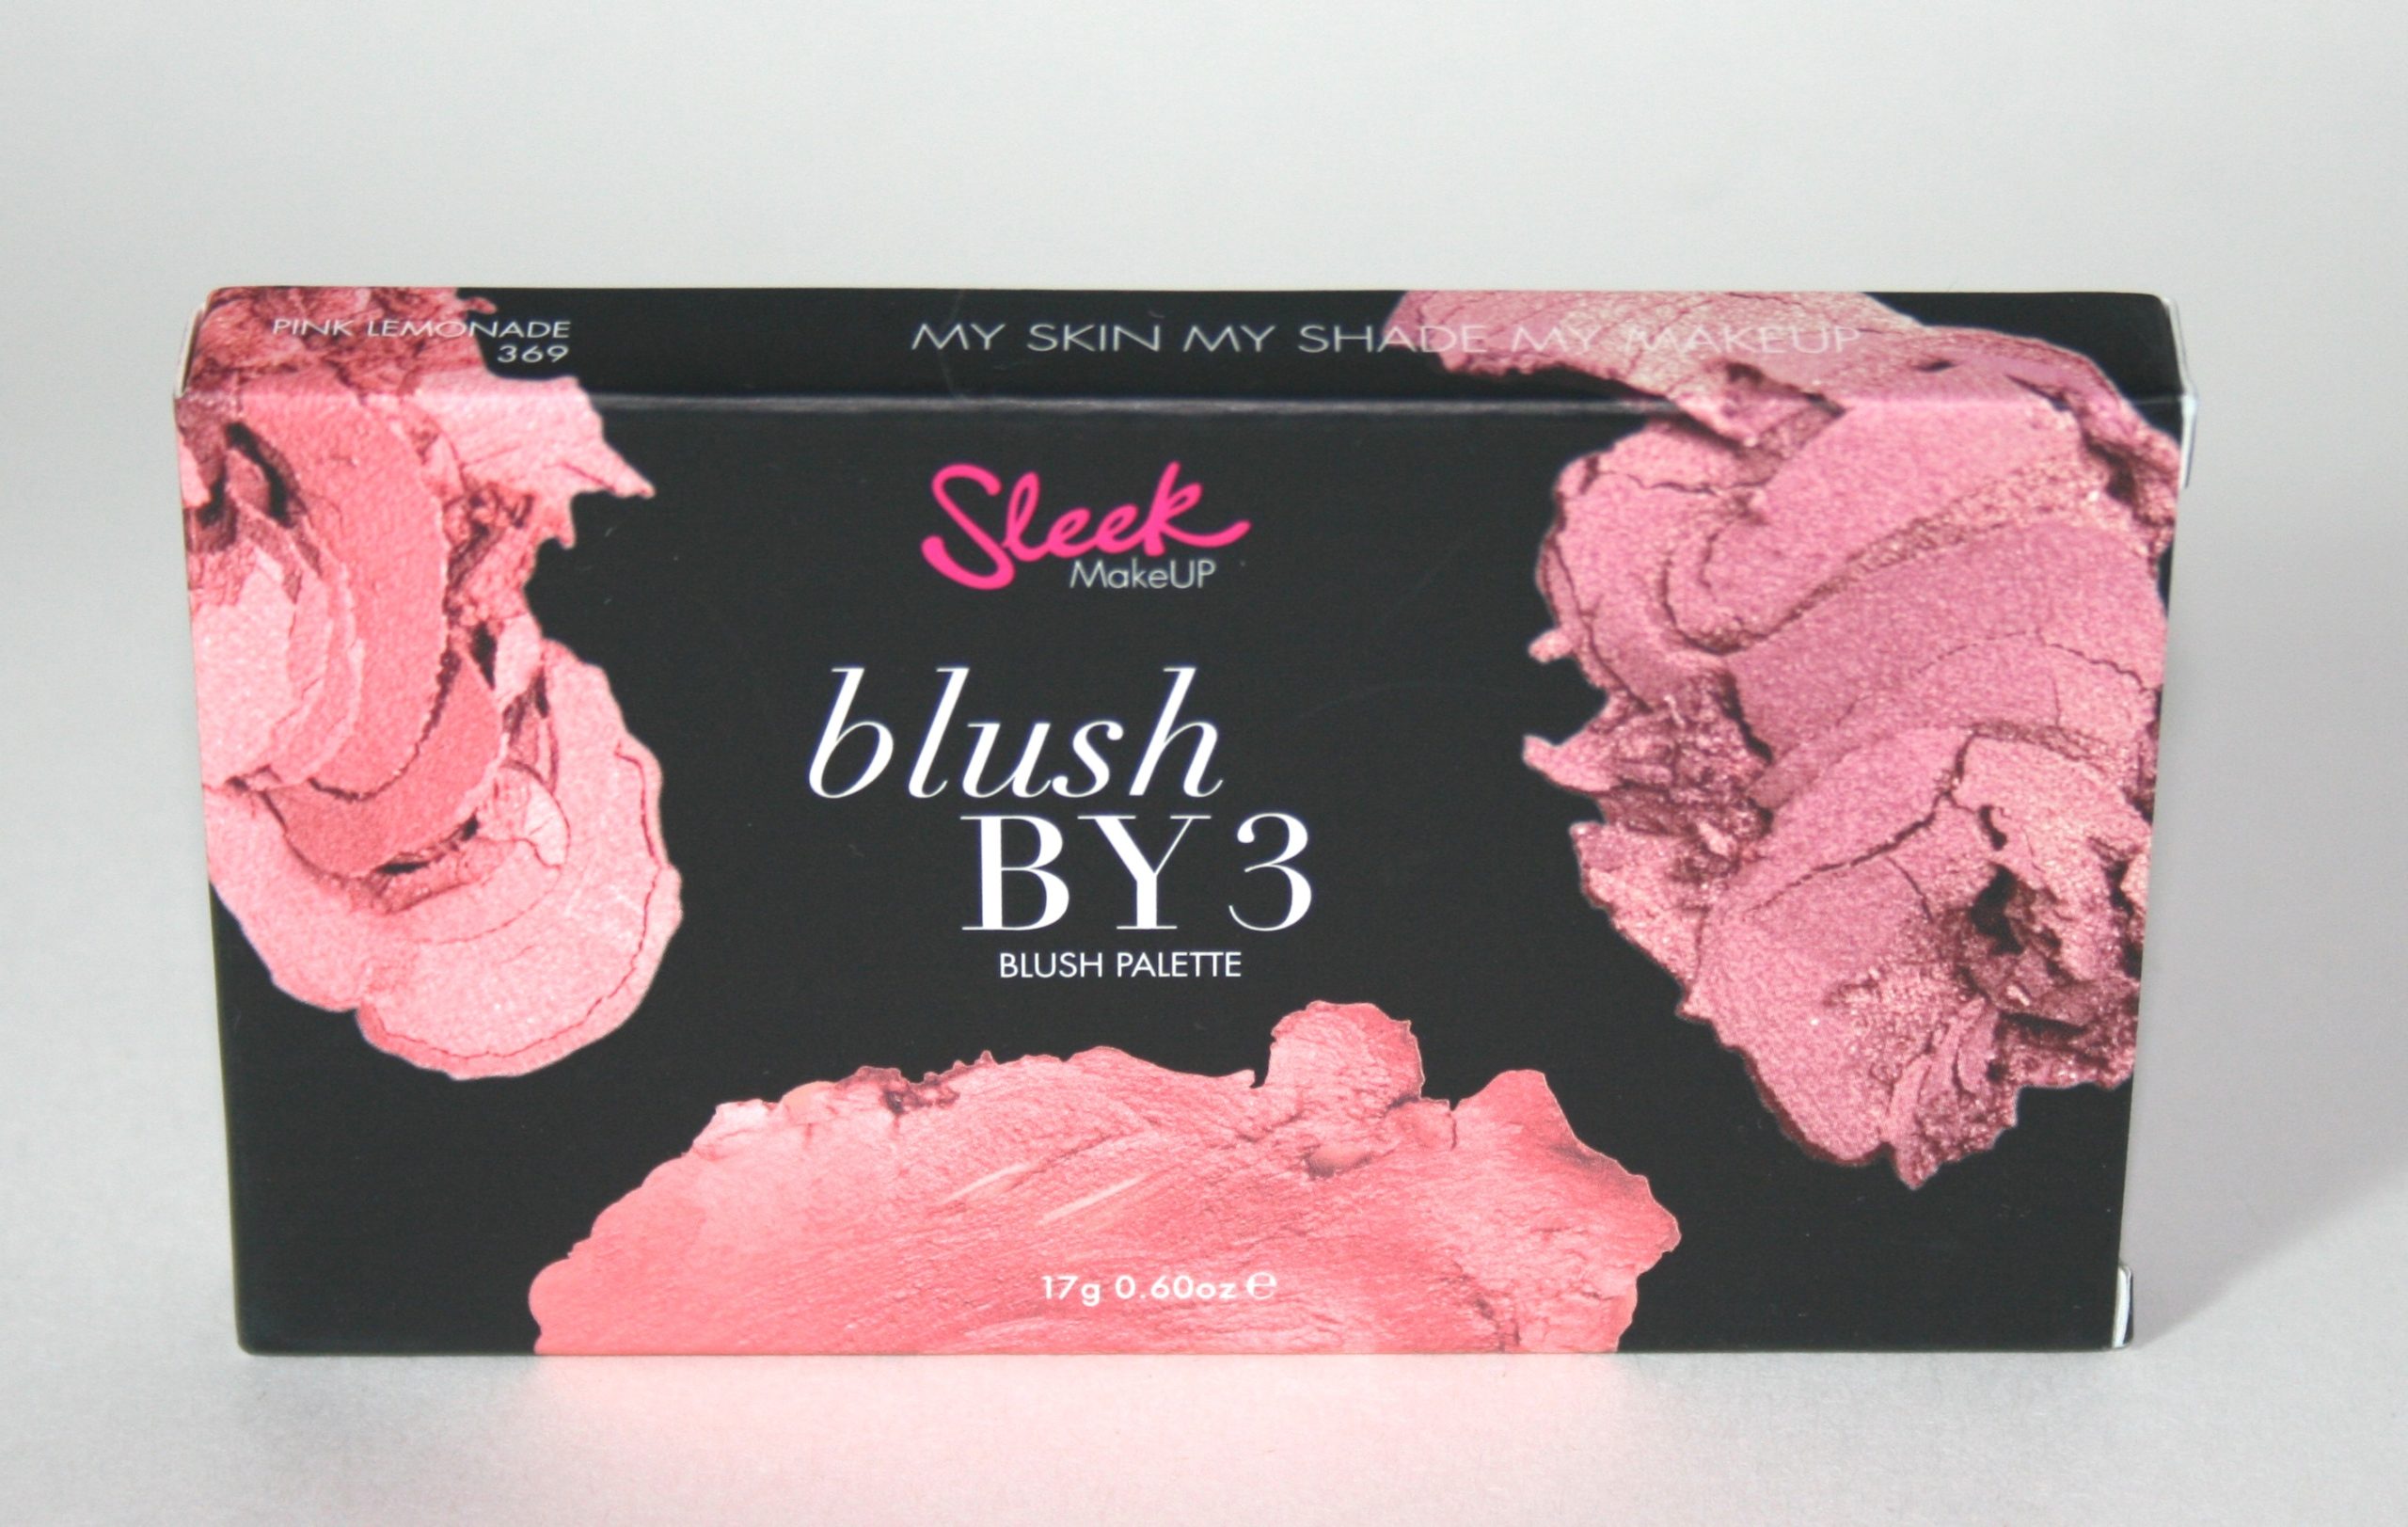 Sleek Make-Up Blush By 3 in Pink Lemonade